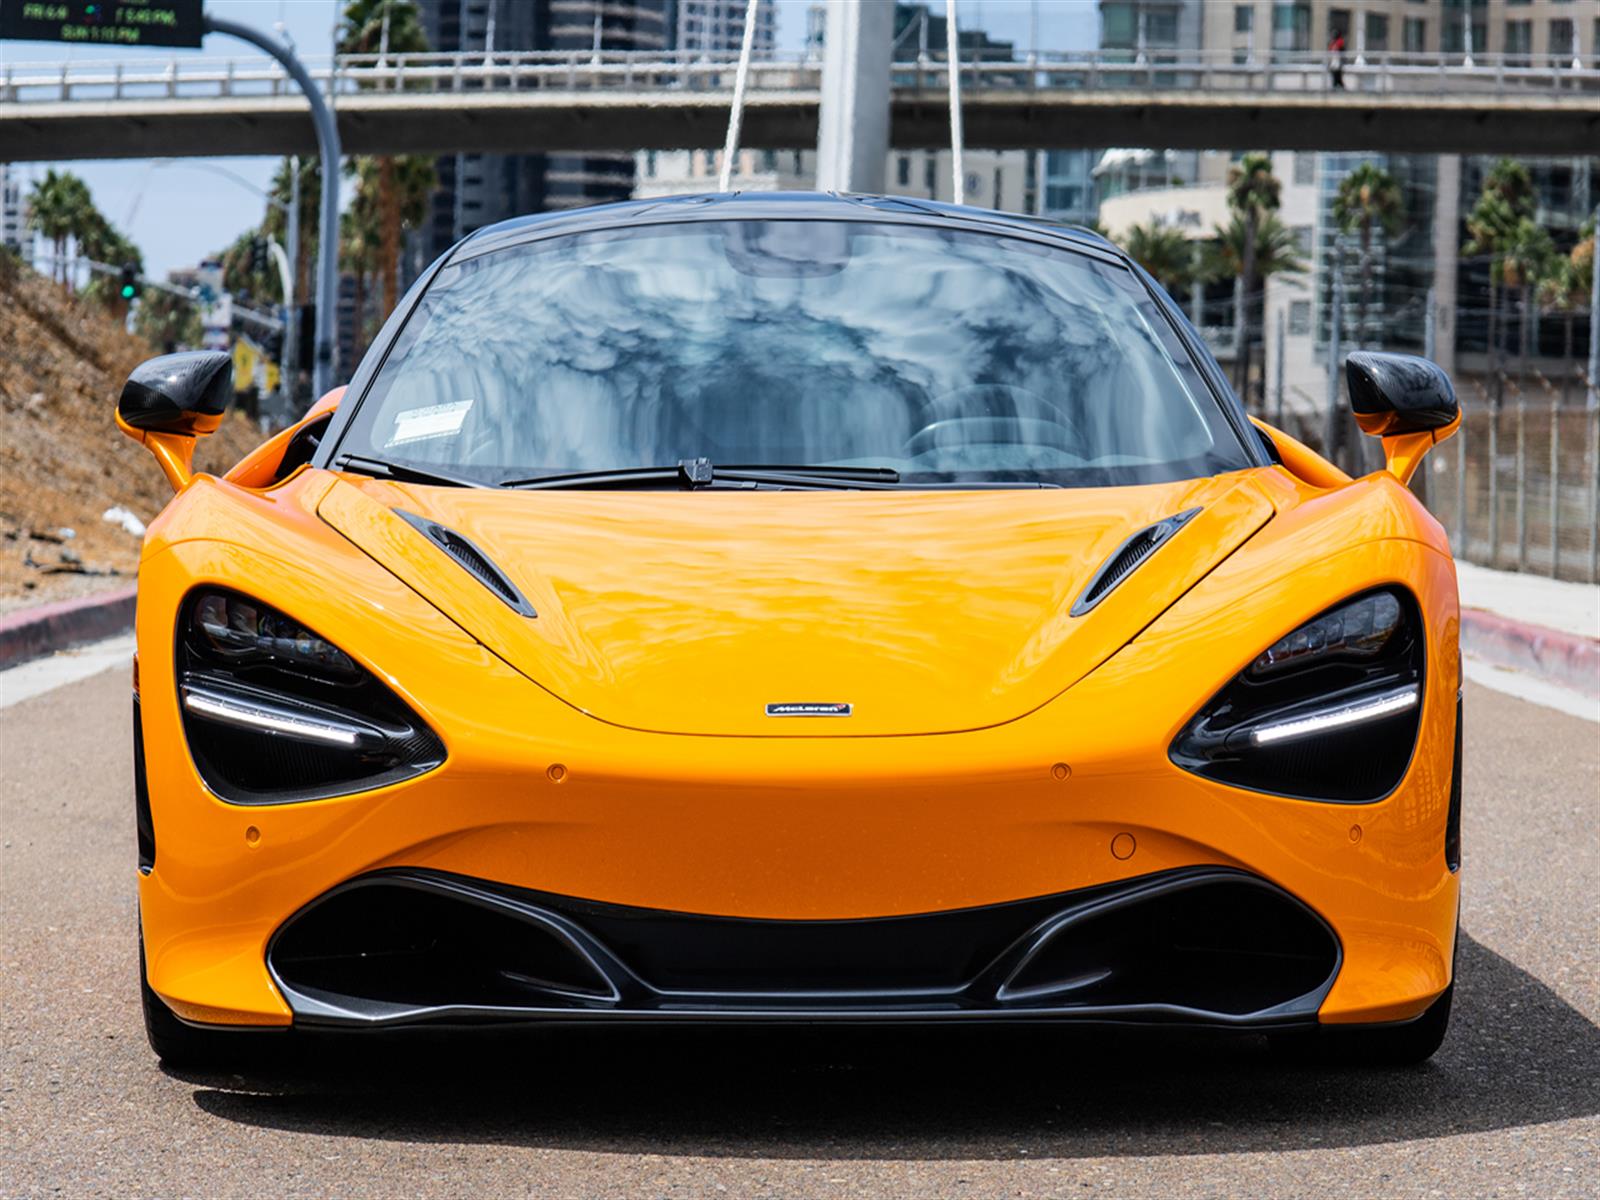  2018 McLaren 720S Performance Car